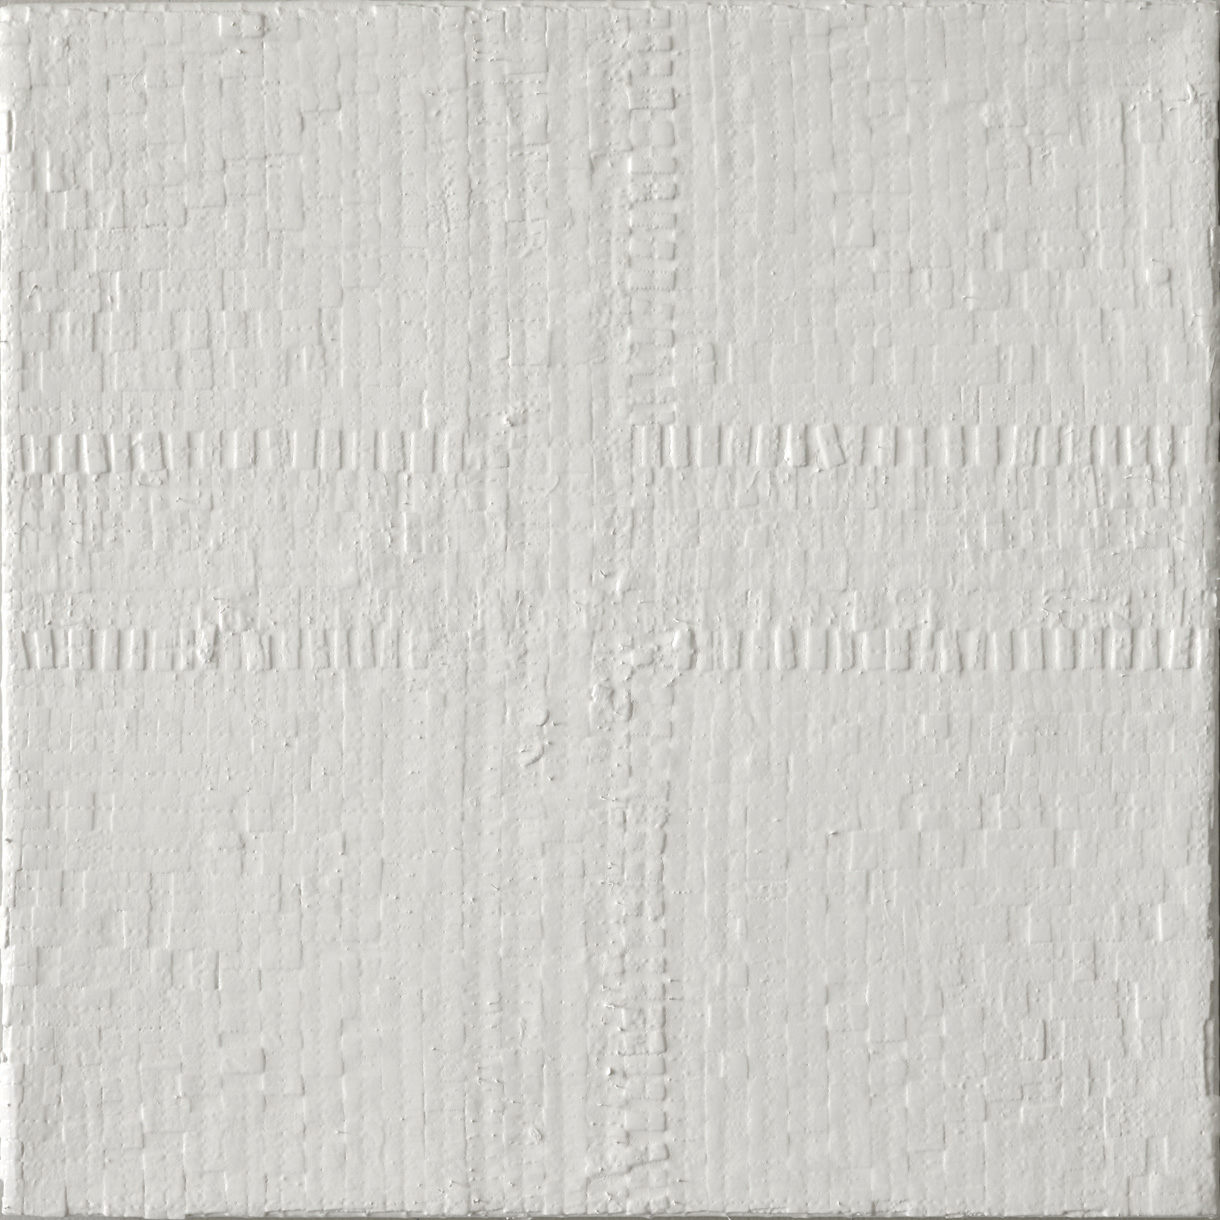 Eveline Kotai - White Space 1, 2010, mixed media + bio paint, 30x30cm